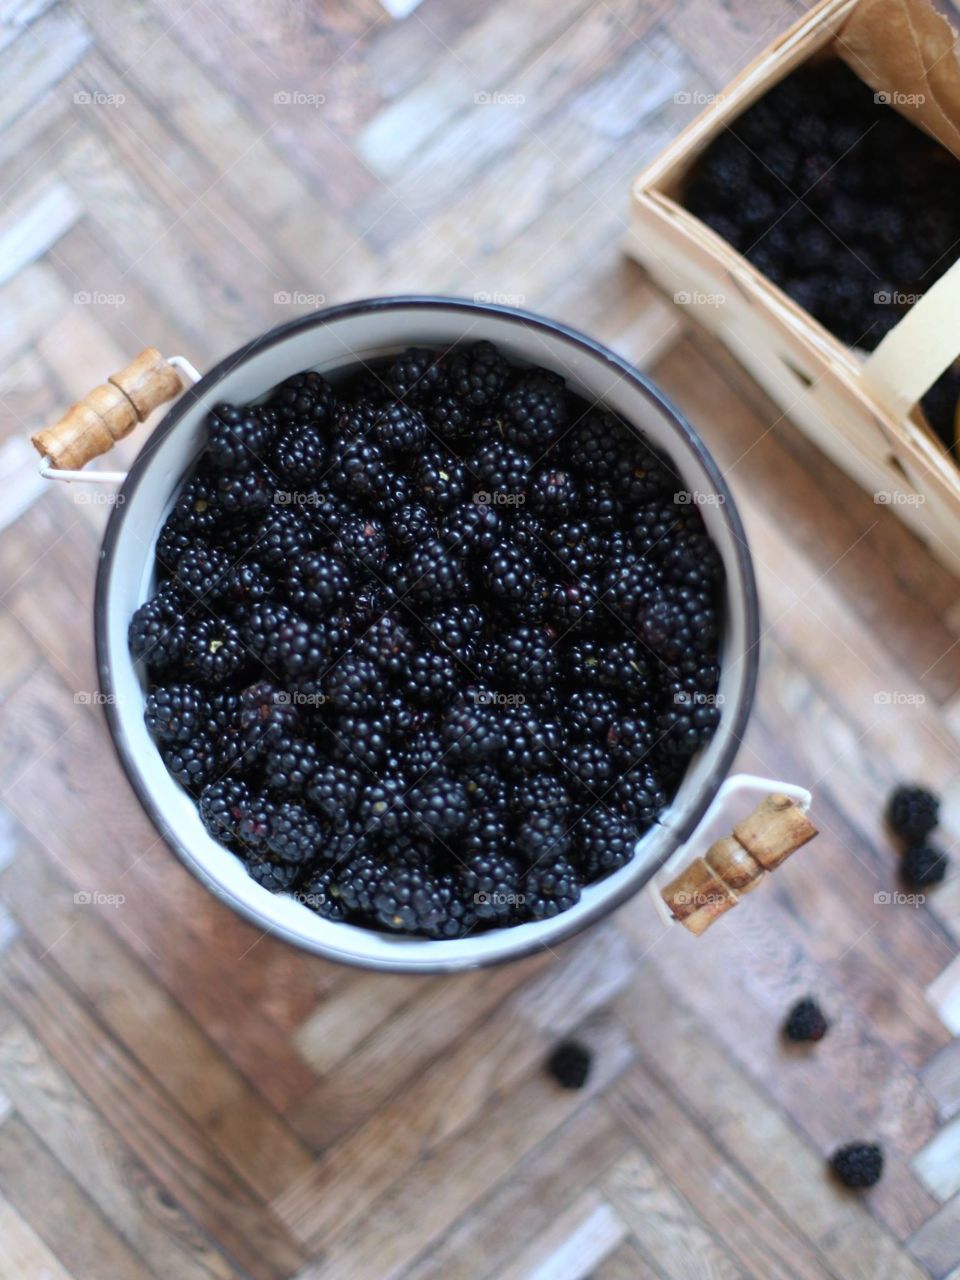 Blackberries in container